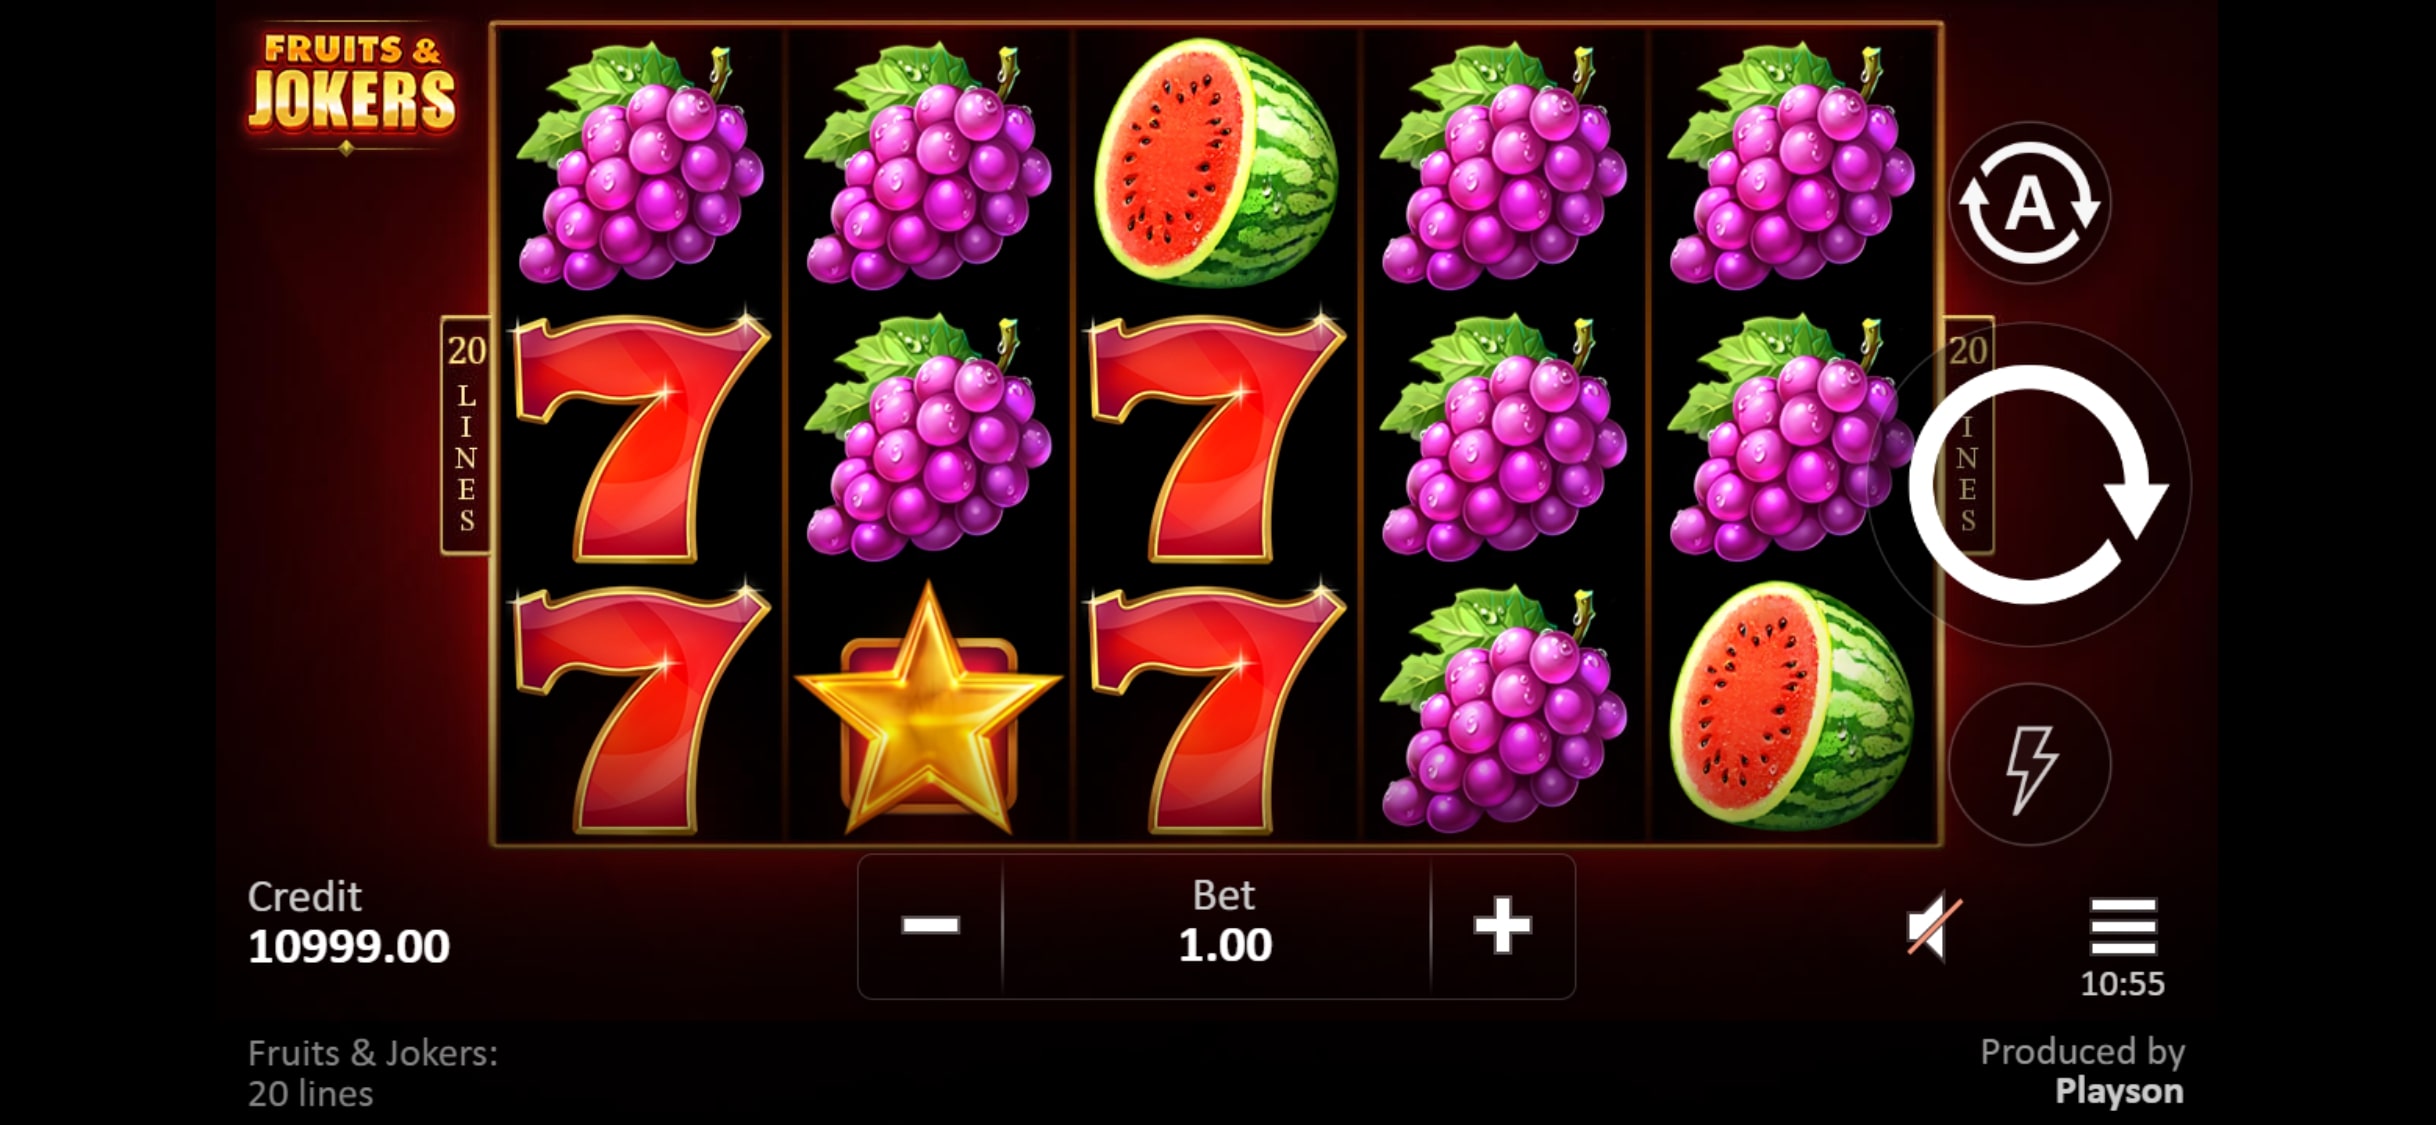 Arcanebet Casino Mobile Slot Games Review